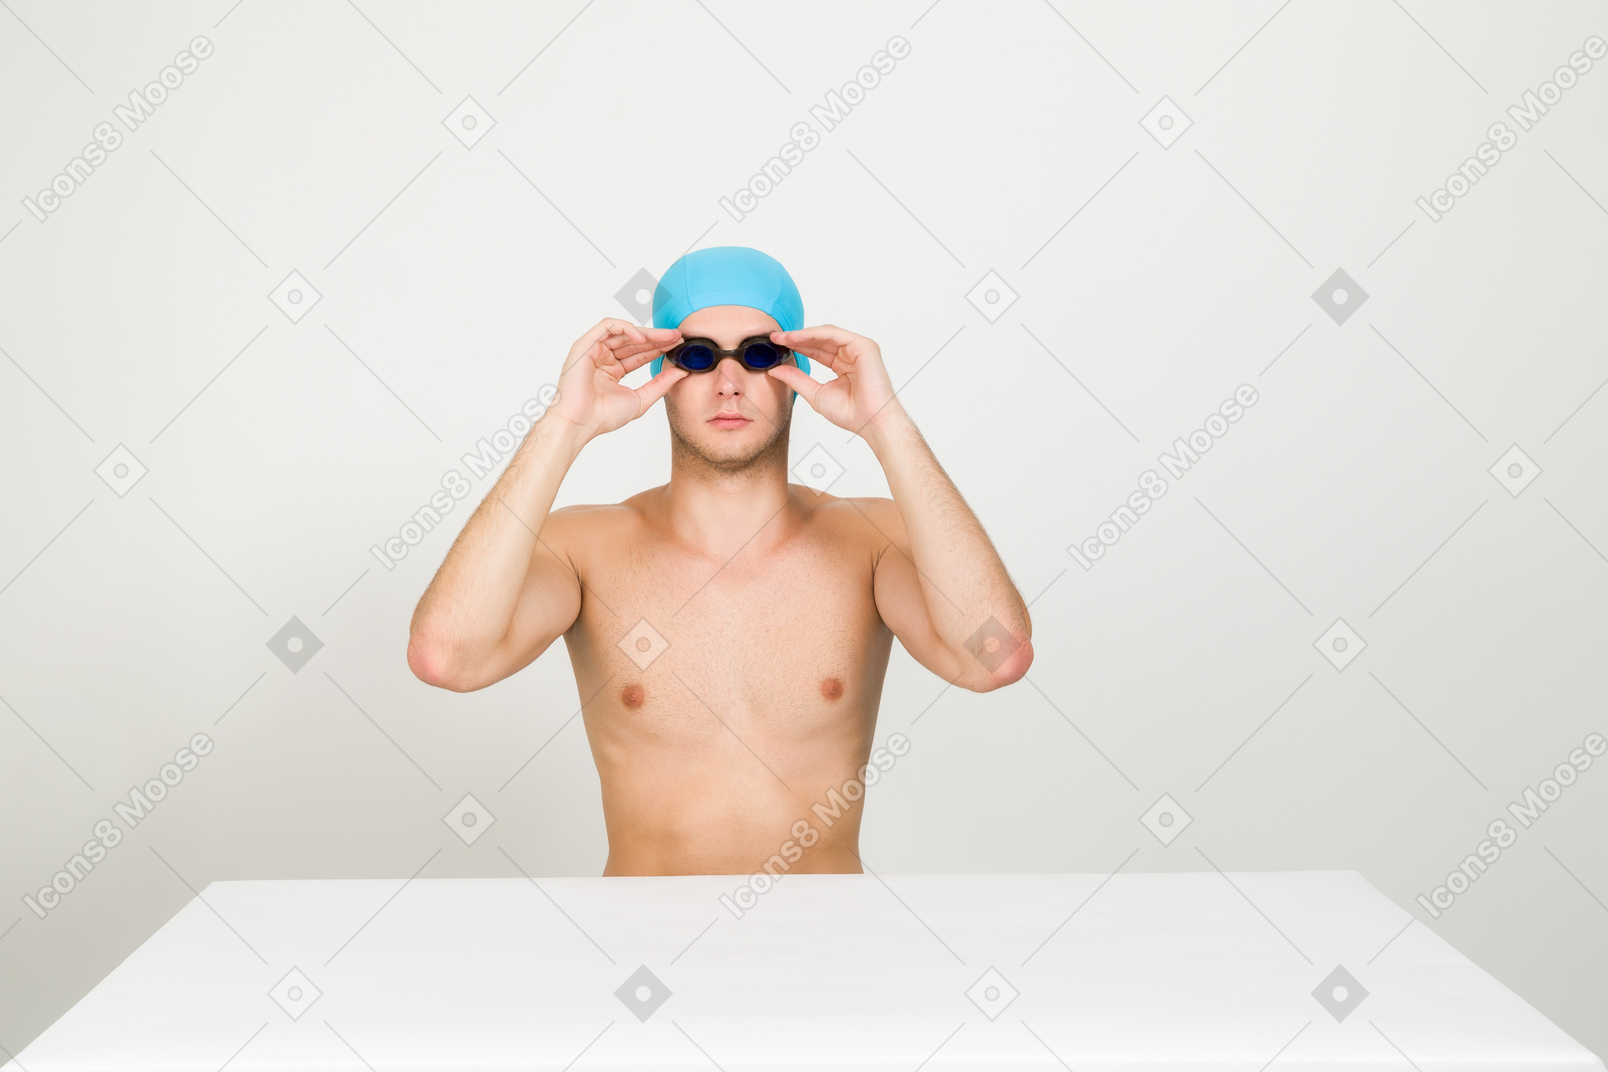 赤裸上身的游泳运动员调整护目镜